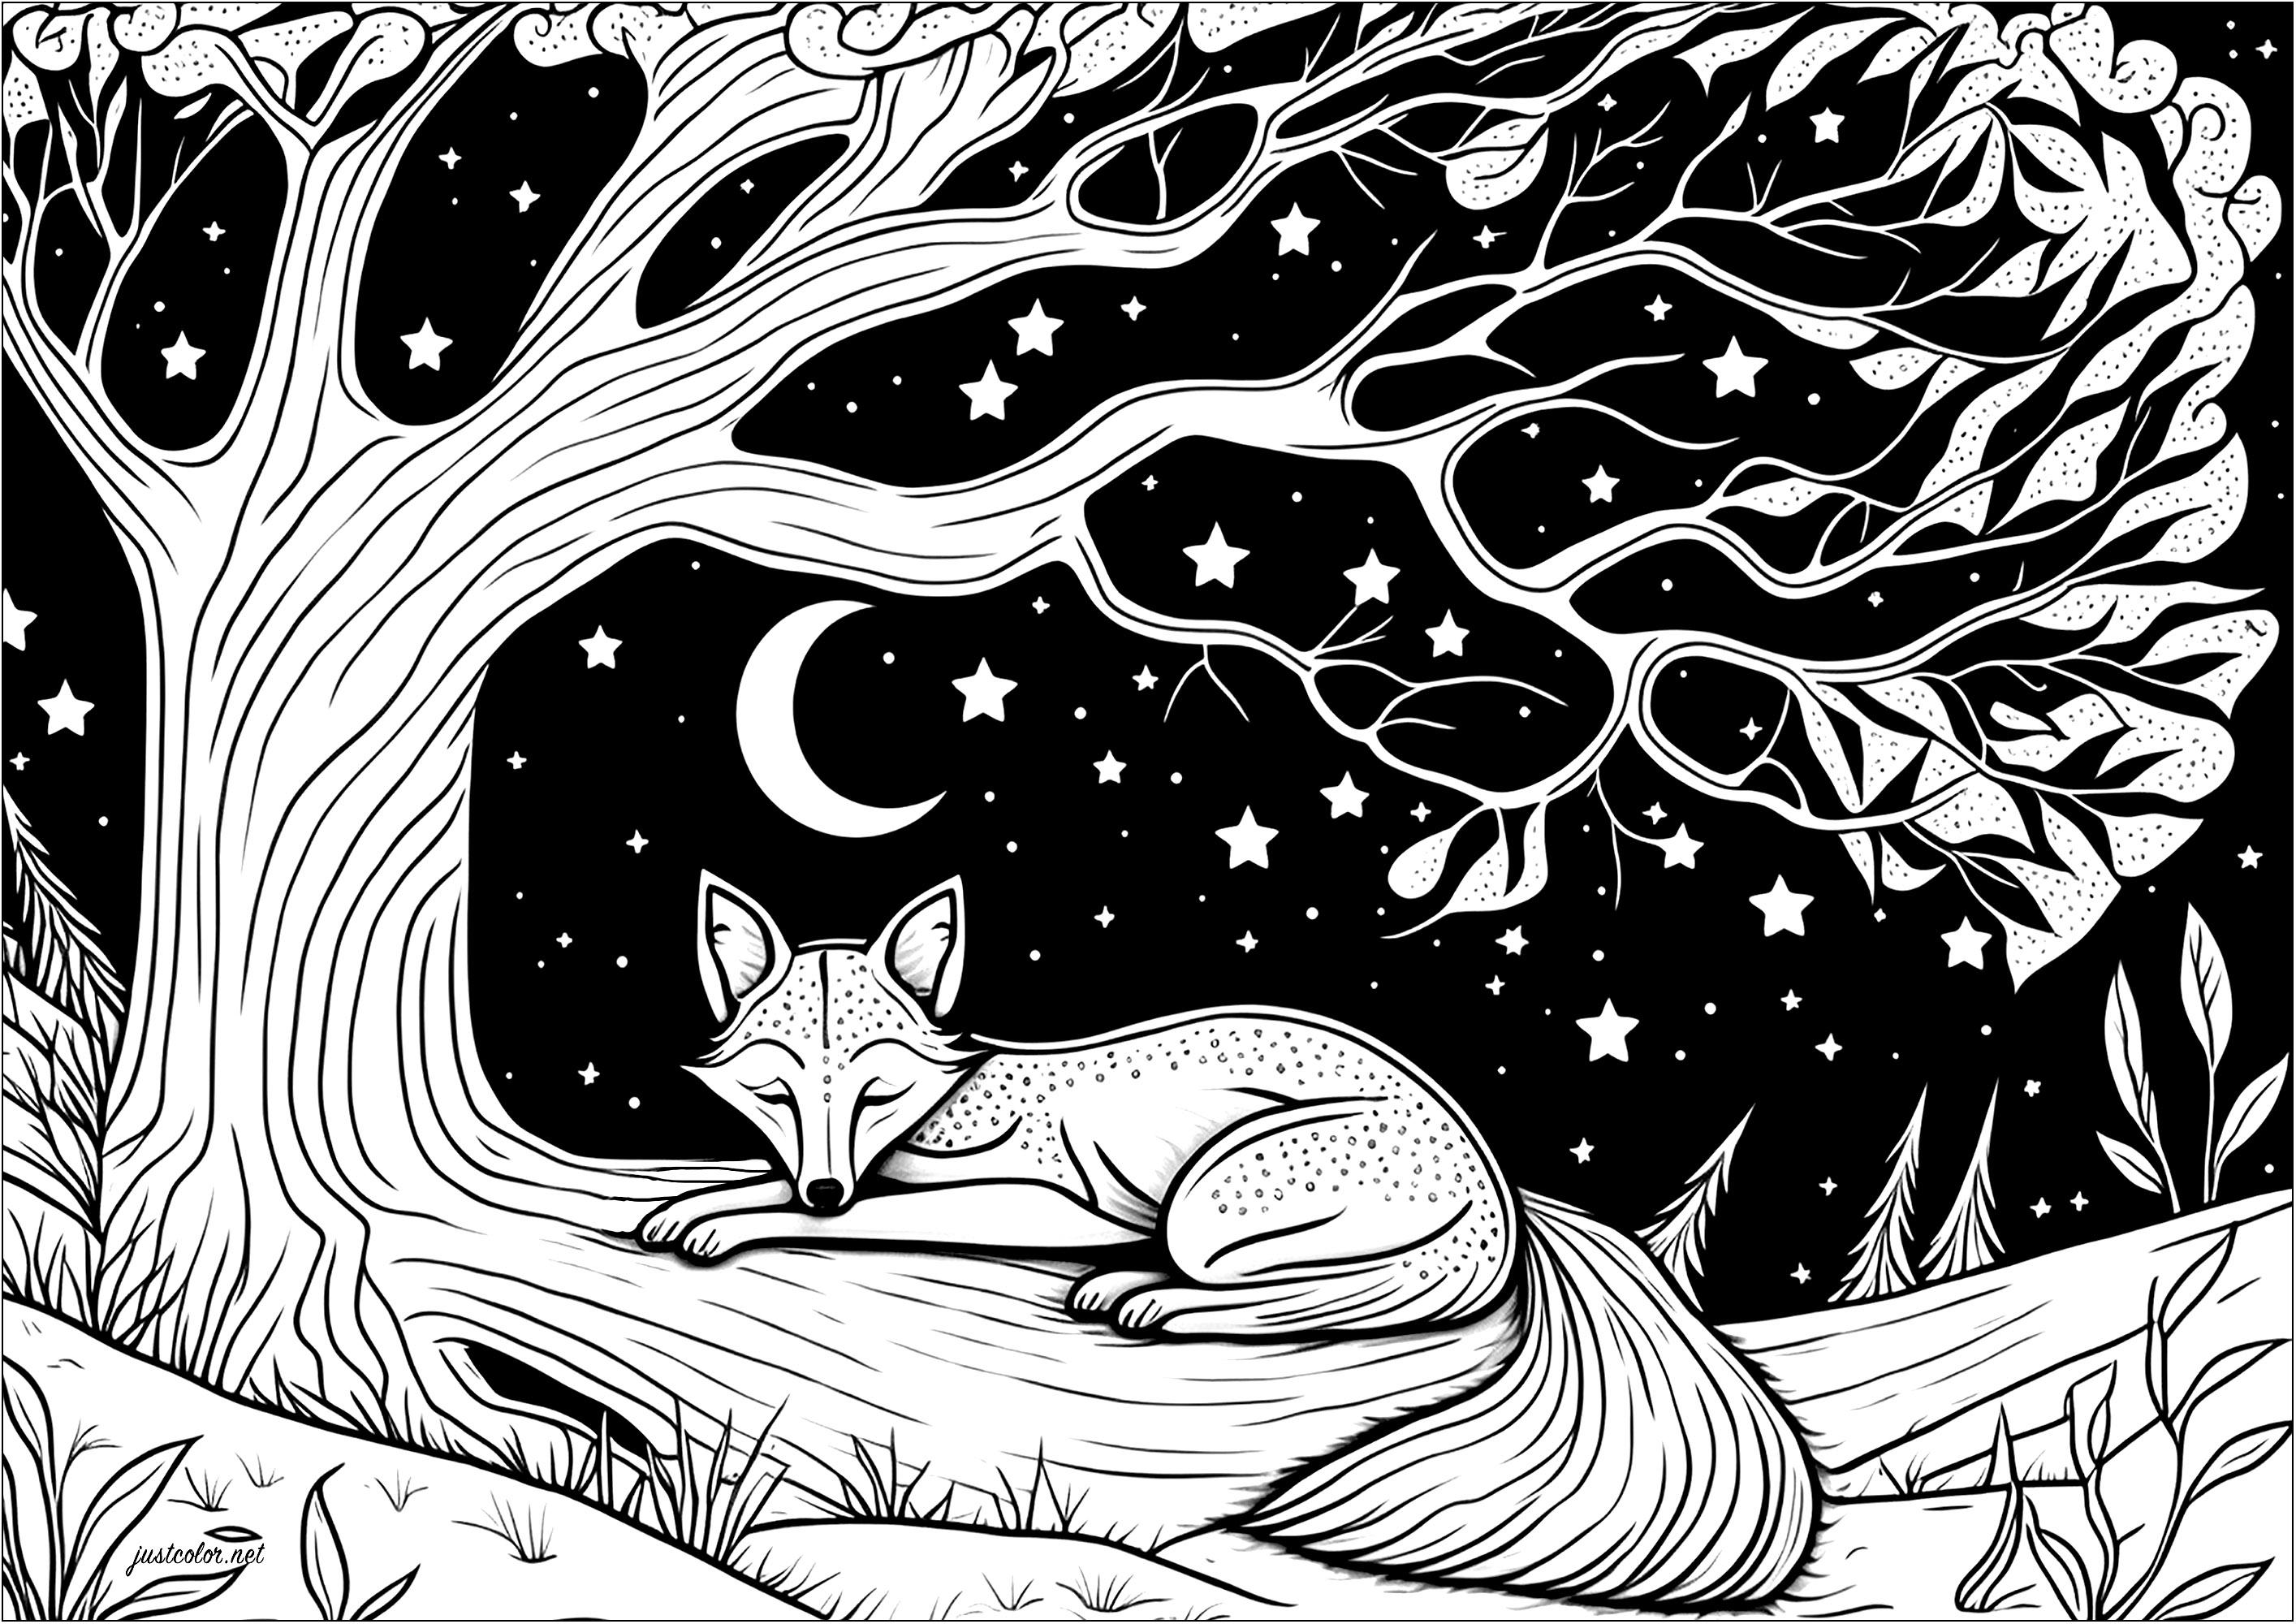 Coloriage d'un renard dormant allongé sur une branche d'arbre . Voici un renard qui dort paisiblement allongé sous un arbre magnifique. Sous ce ciel étoilé, on dirait qu'il est en train de rêver de grands aventures !